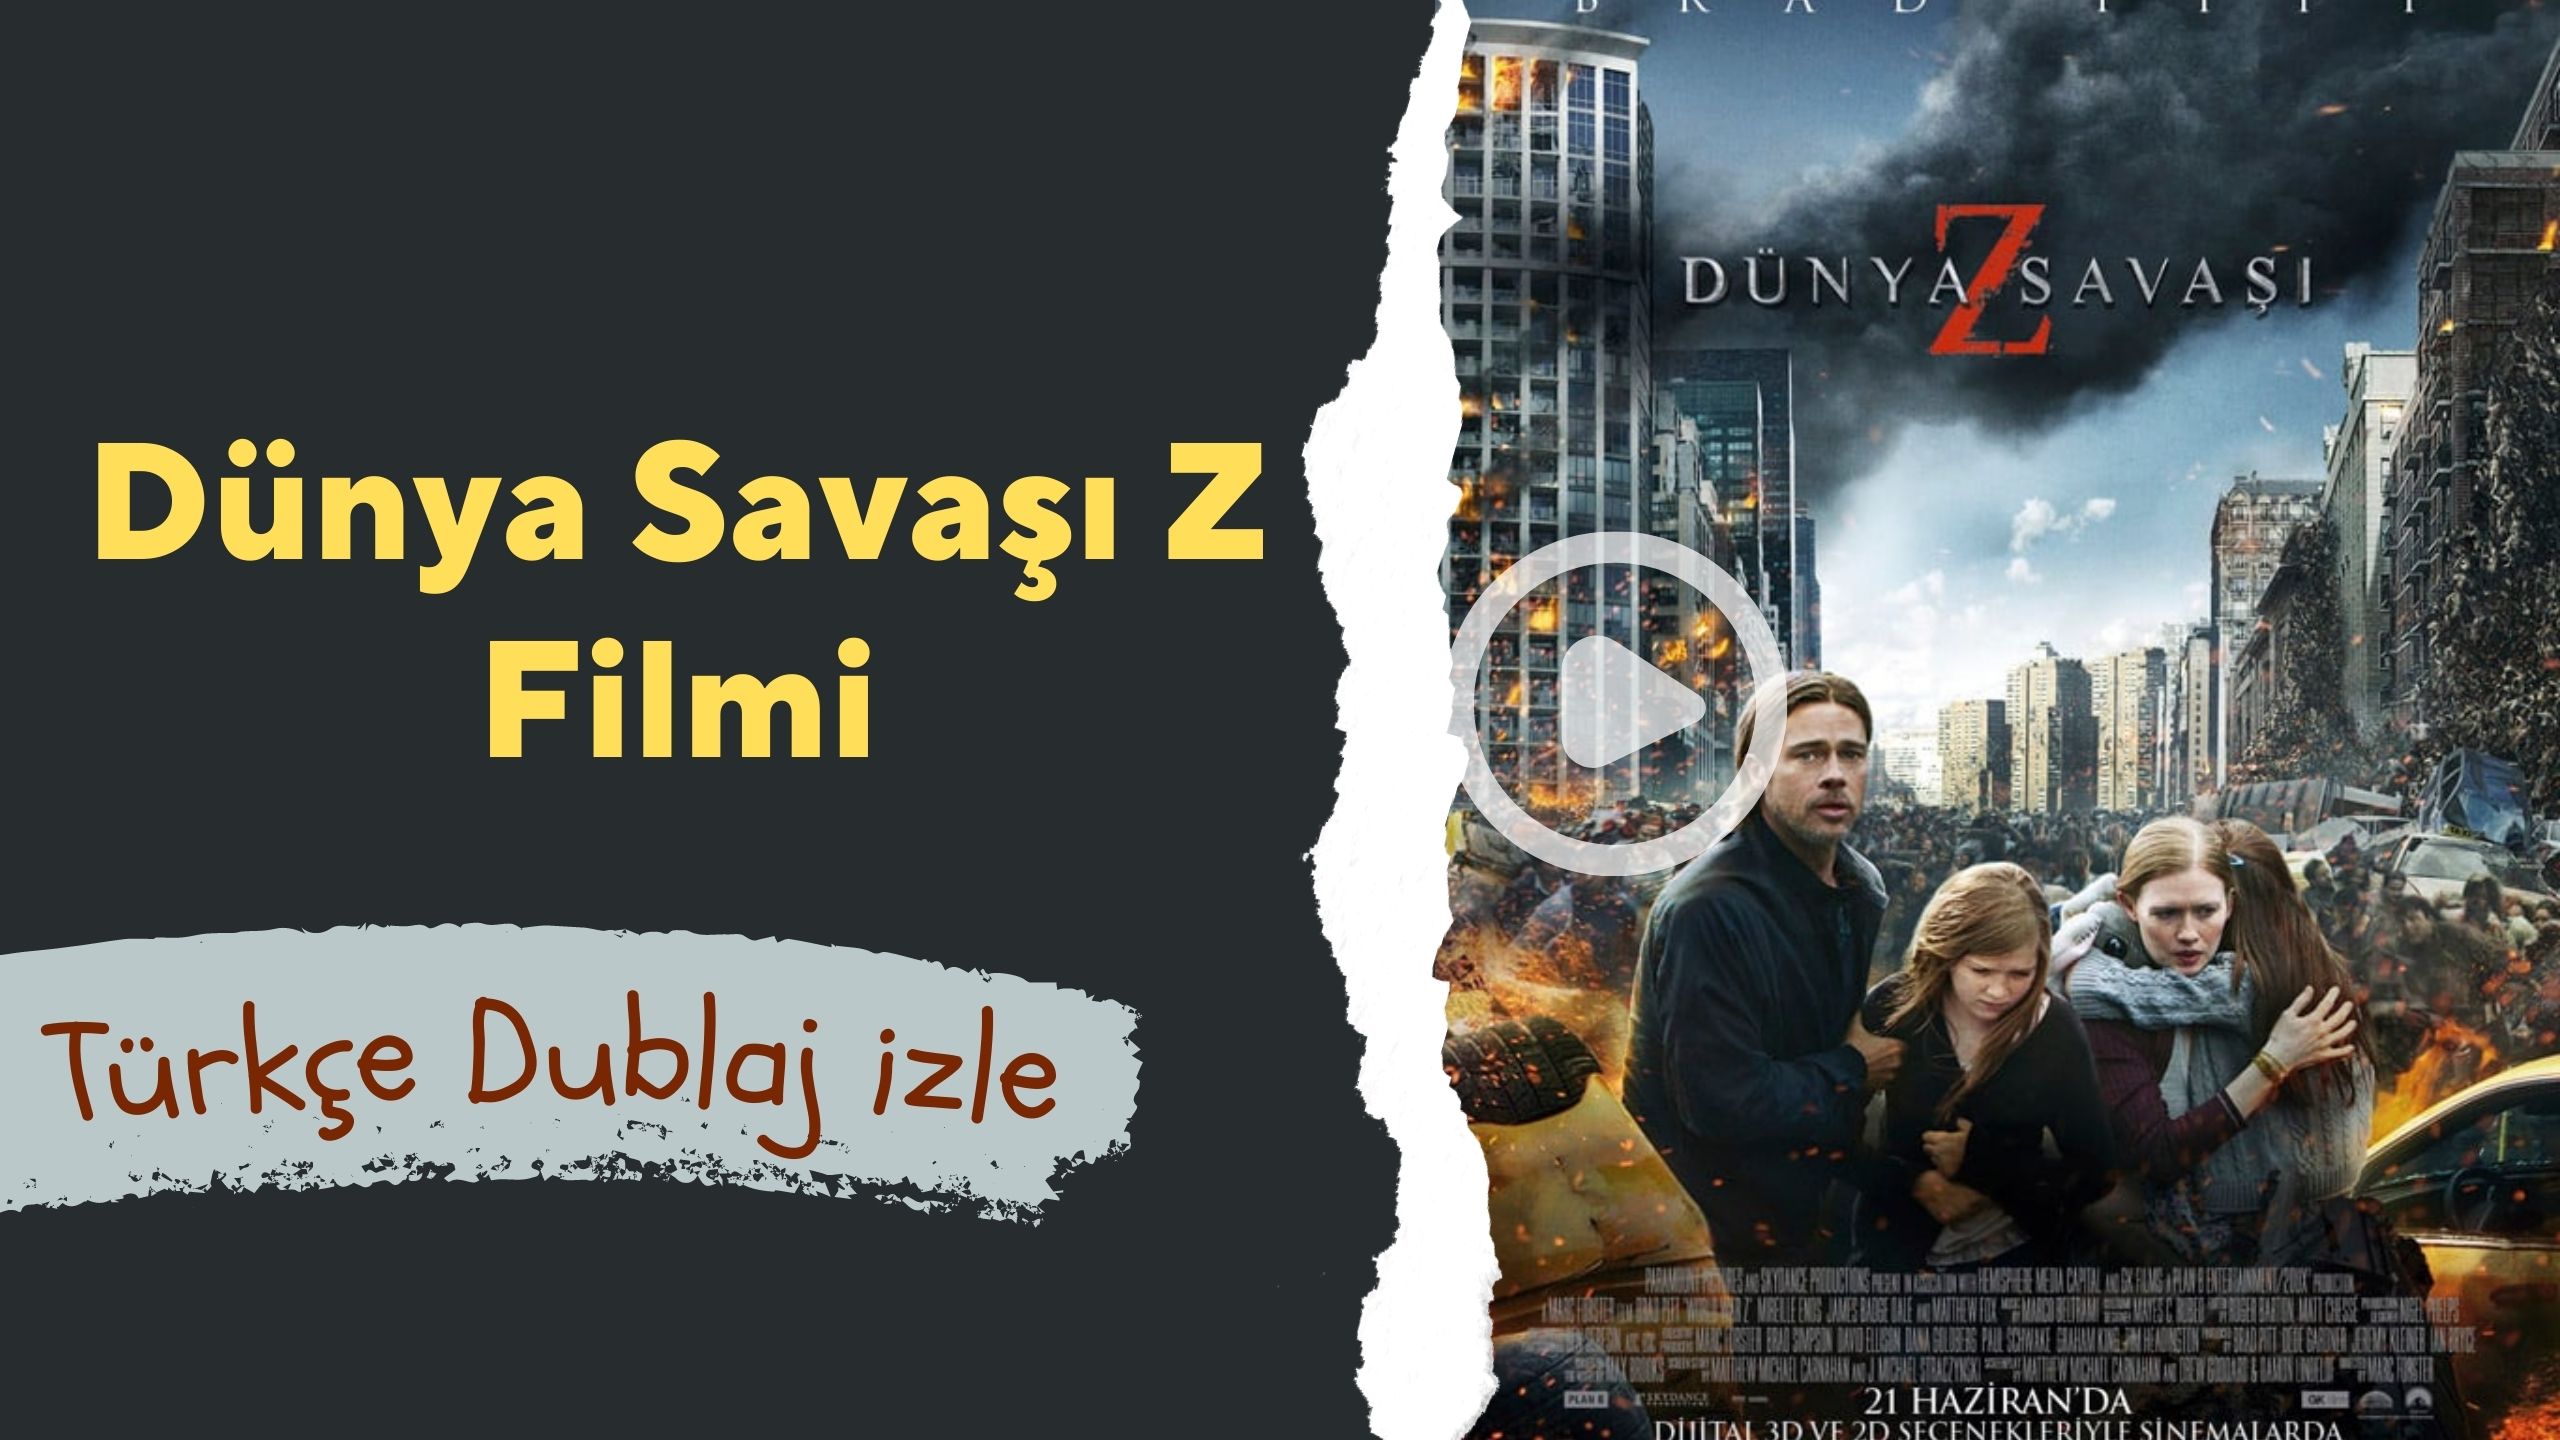 Dünya Savaşı Z Filmini Türkçe Dublaj izle, 720p